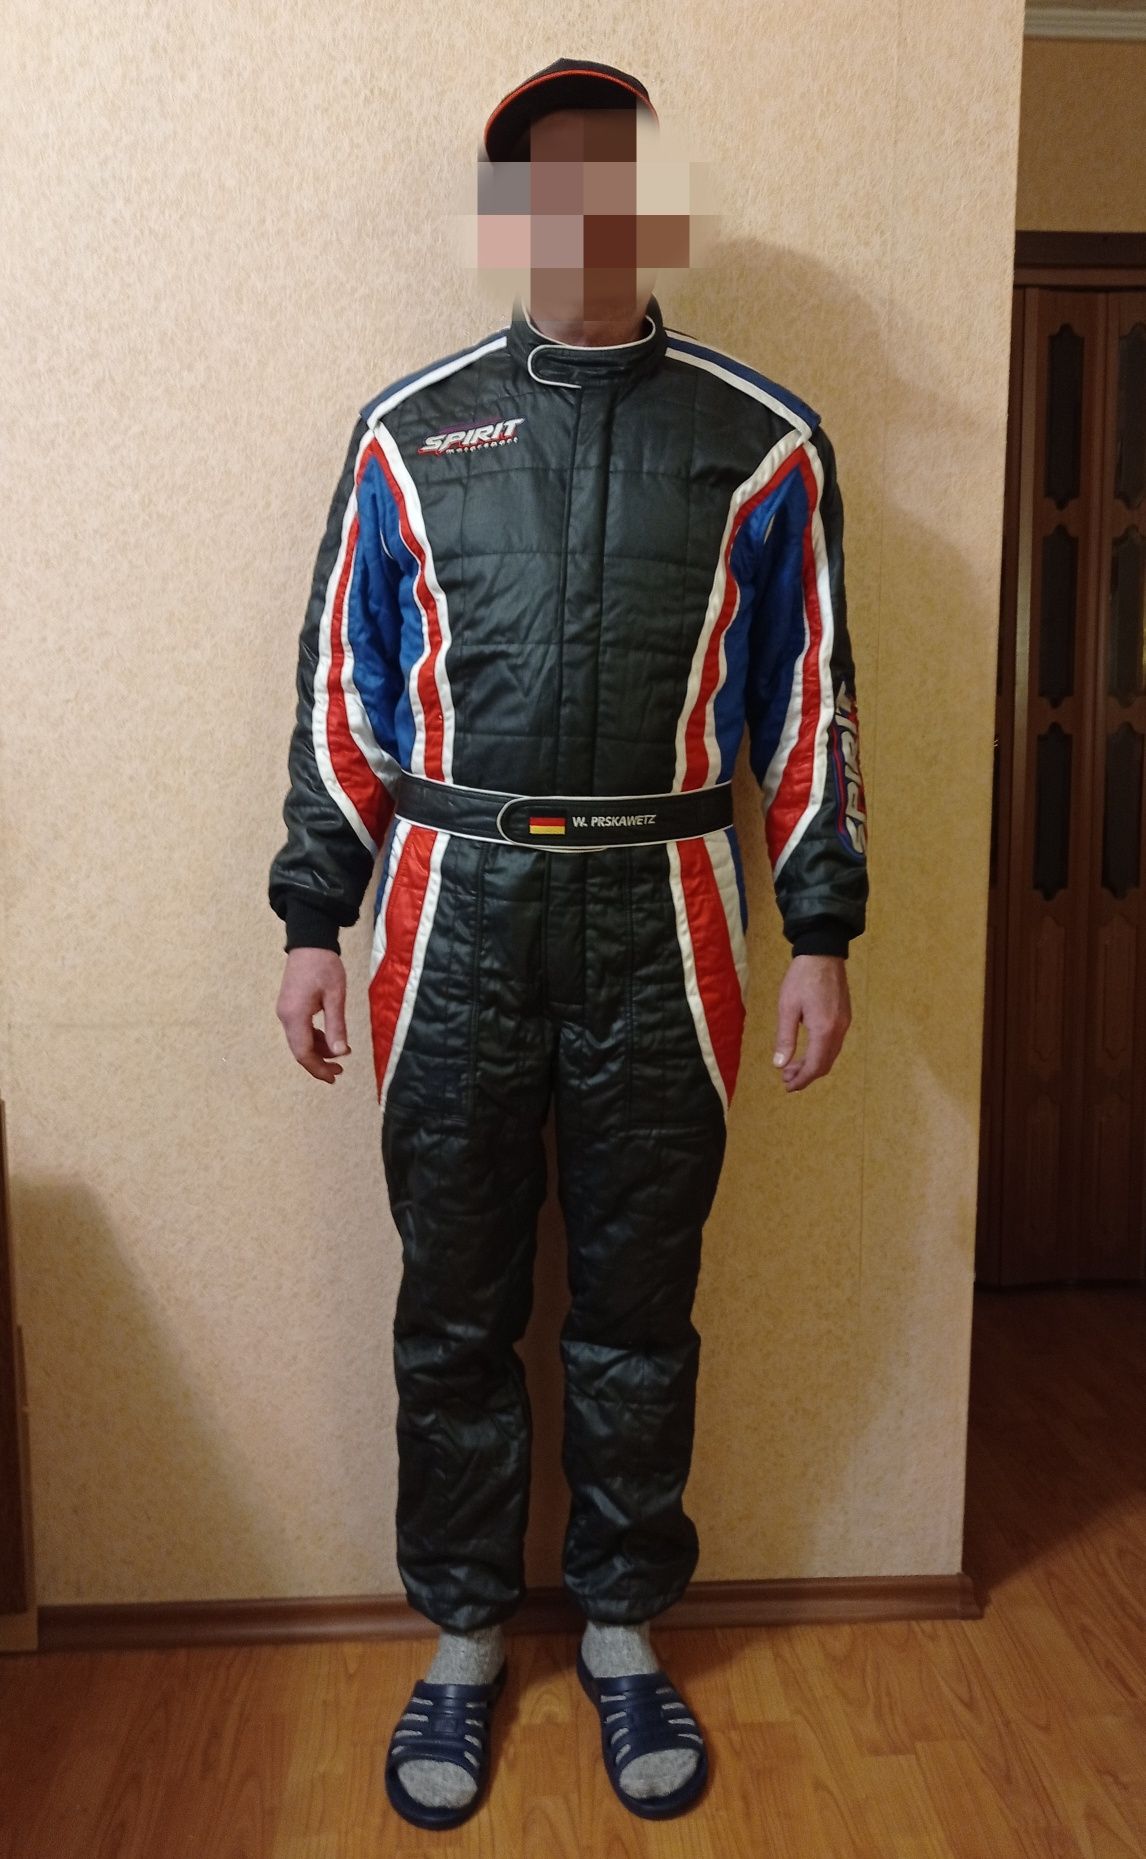 Гоночный огнестойкий костюм Bebek Racewear FIA Nanomex III